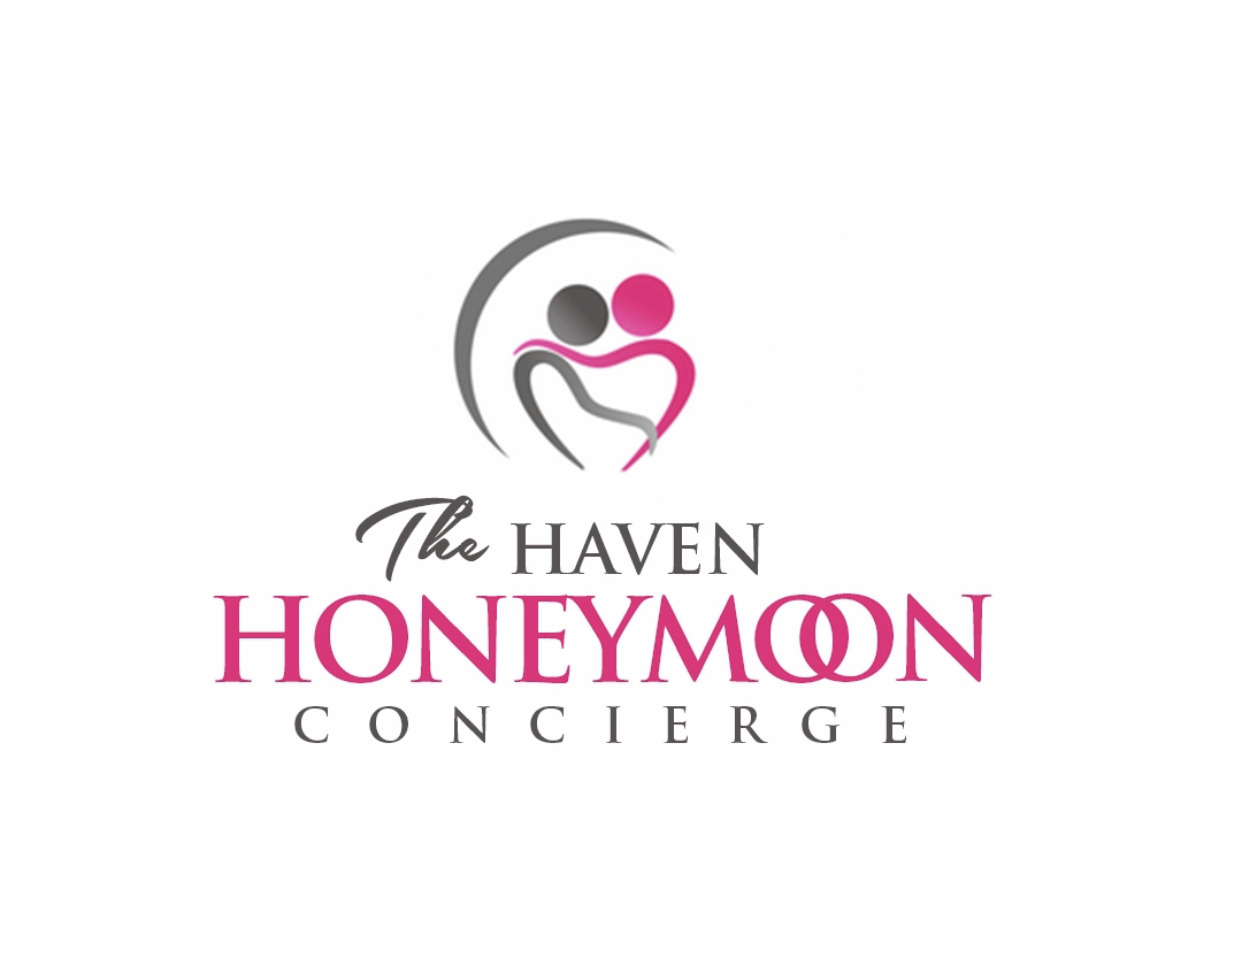 The Haven Honeymoon Concierge